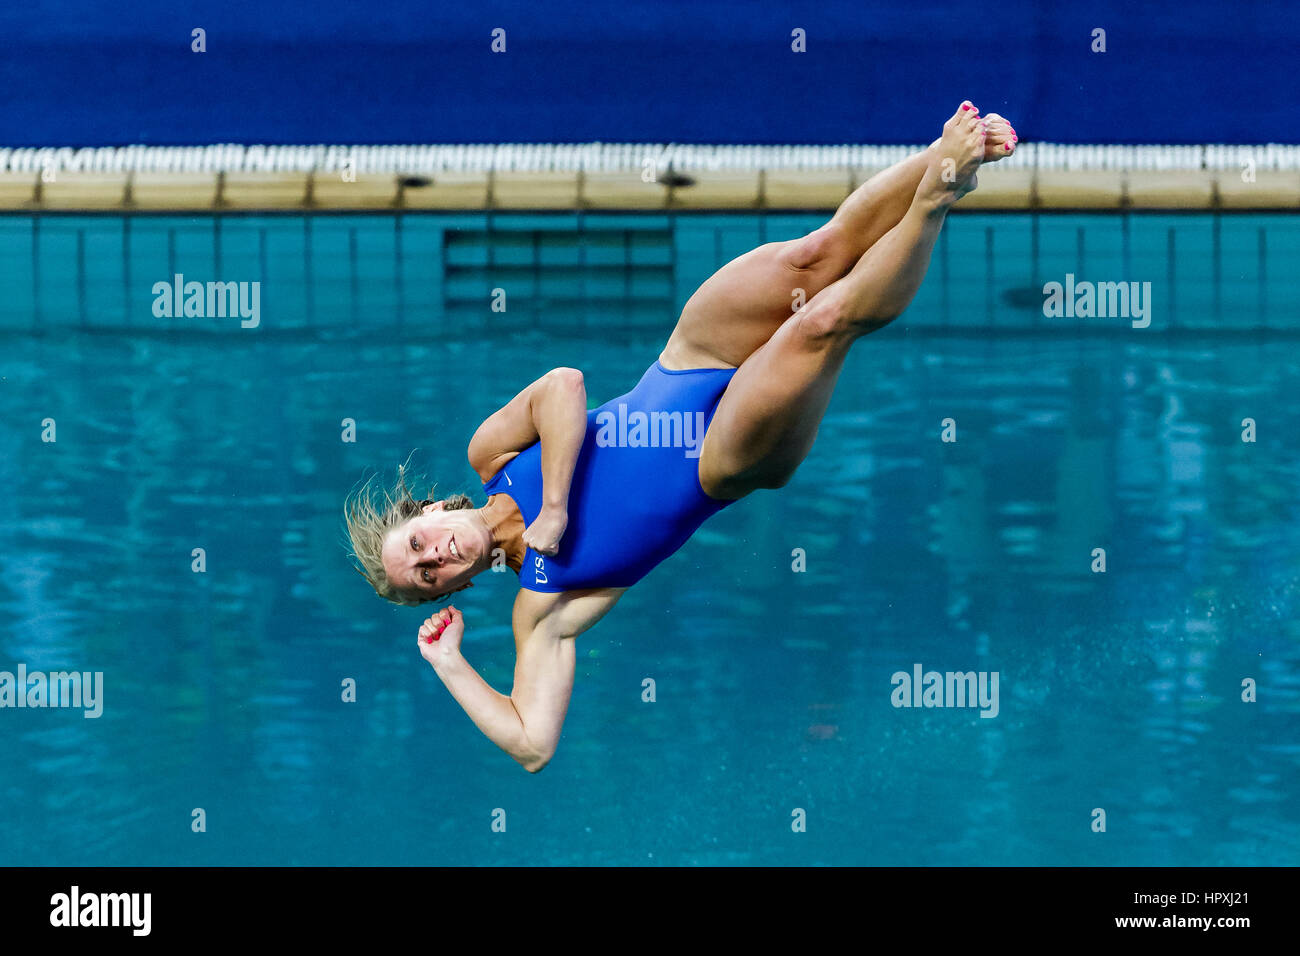 Rio de Janeiro, Brésil. 14 août 2016 Abigail Johnston (USA) participe à la plongée Femmes Tremplin 3m finale aux Jeux Olympiques d'été 2016. ©Pau Banque D'Images